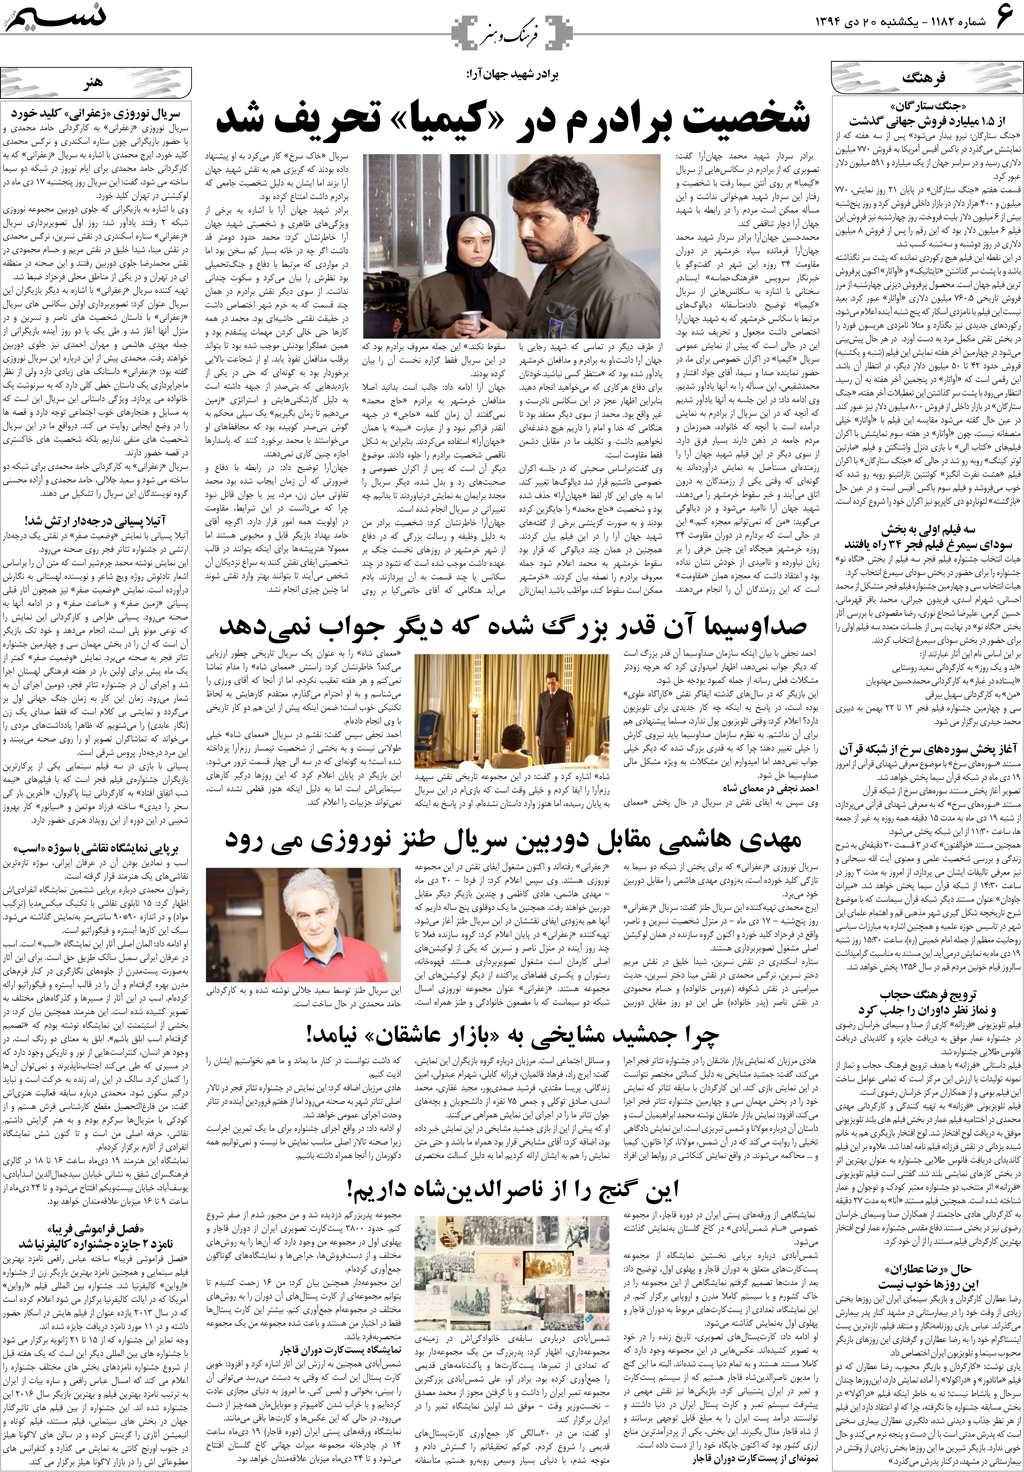 صفحه فرهنگ و هنر روزنامه نسیم شماره 1182